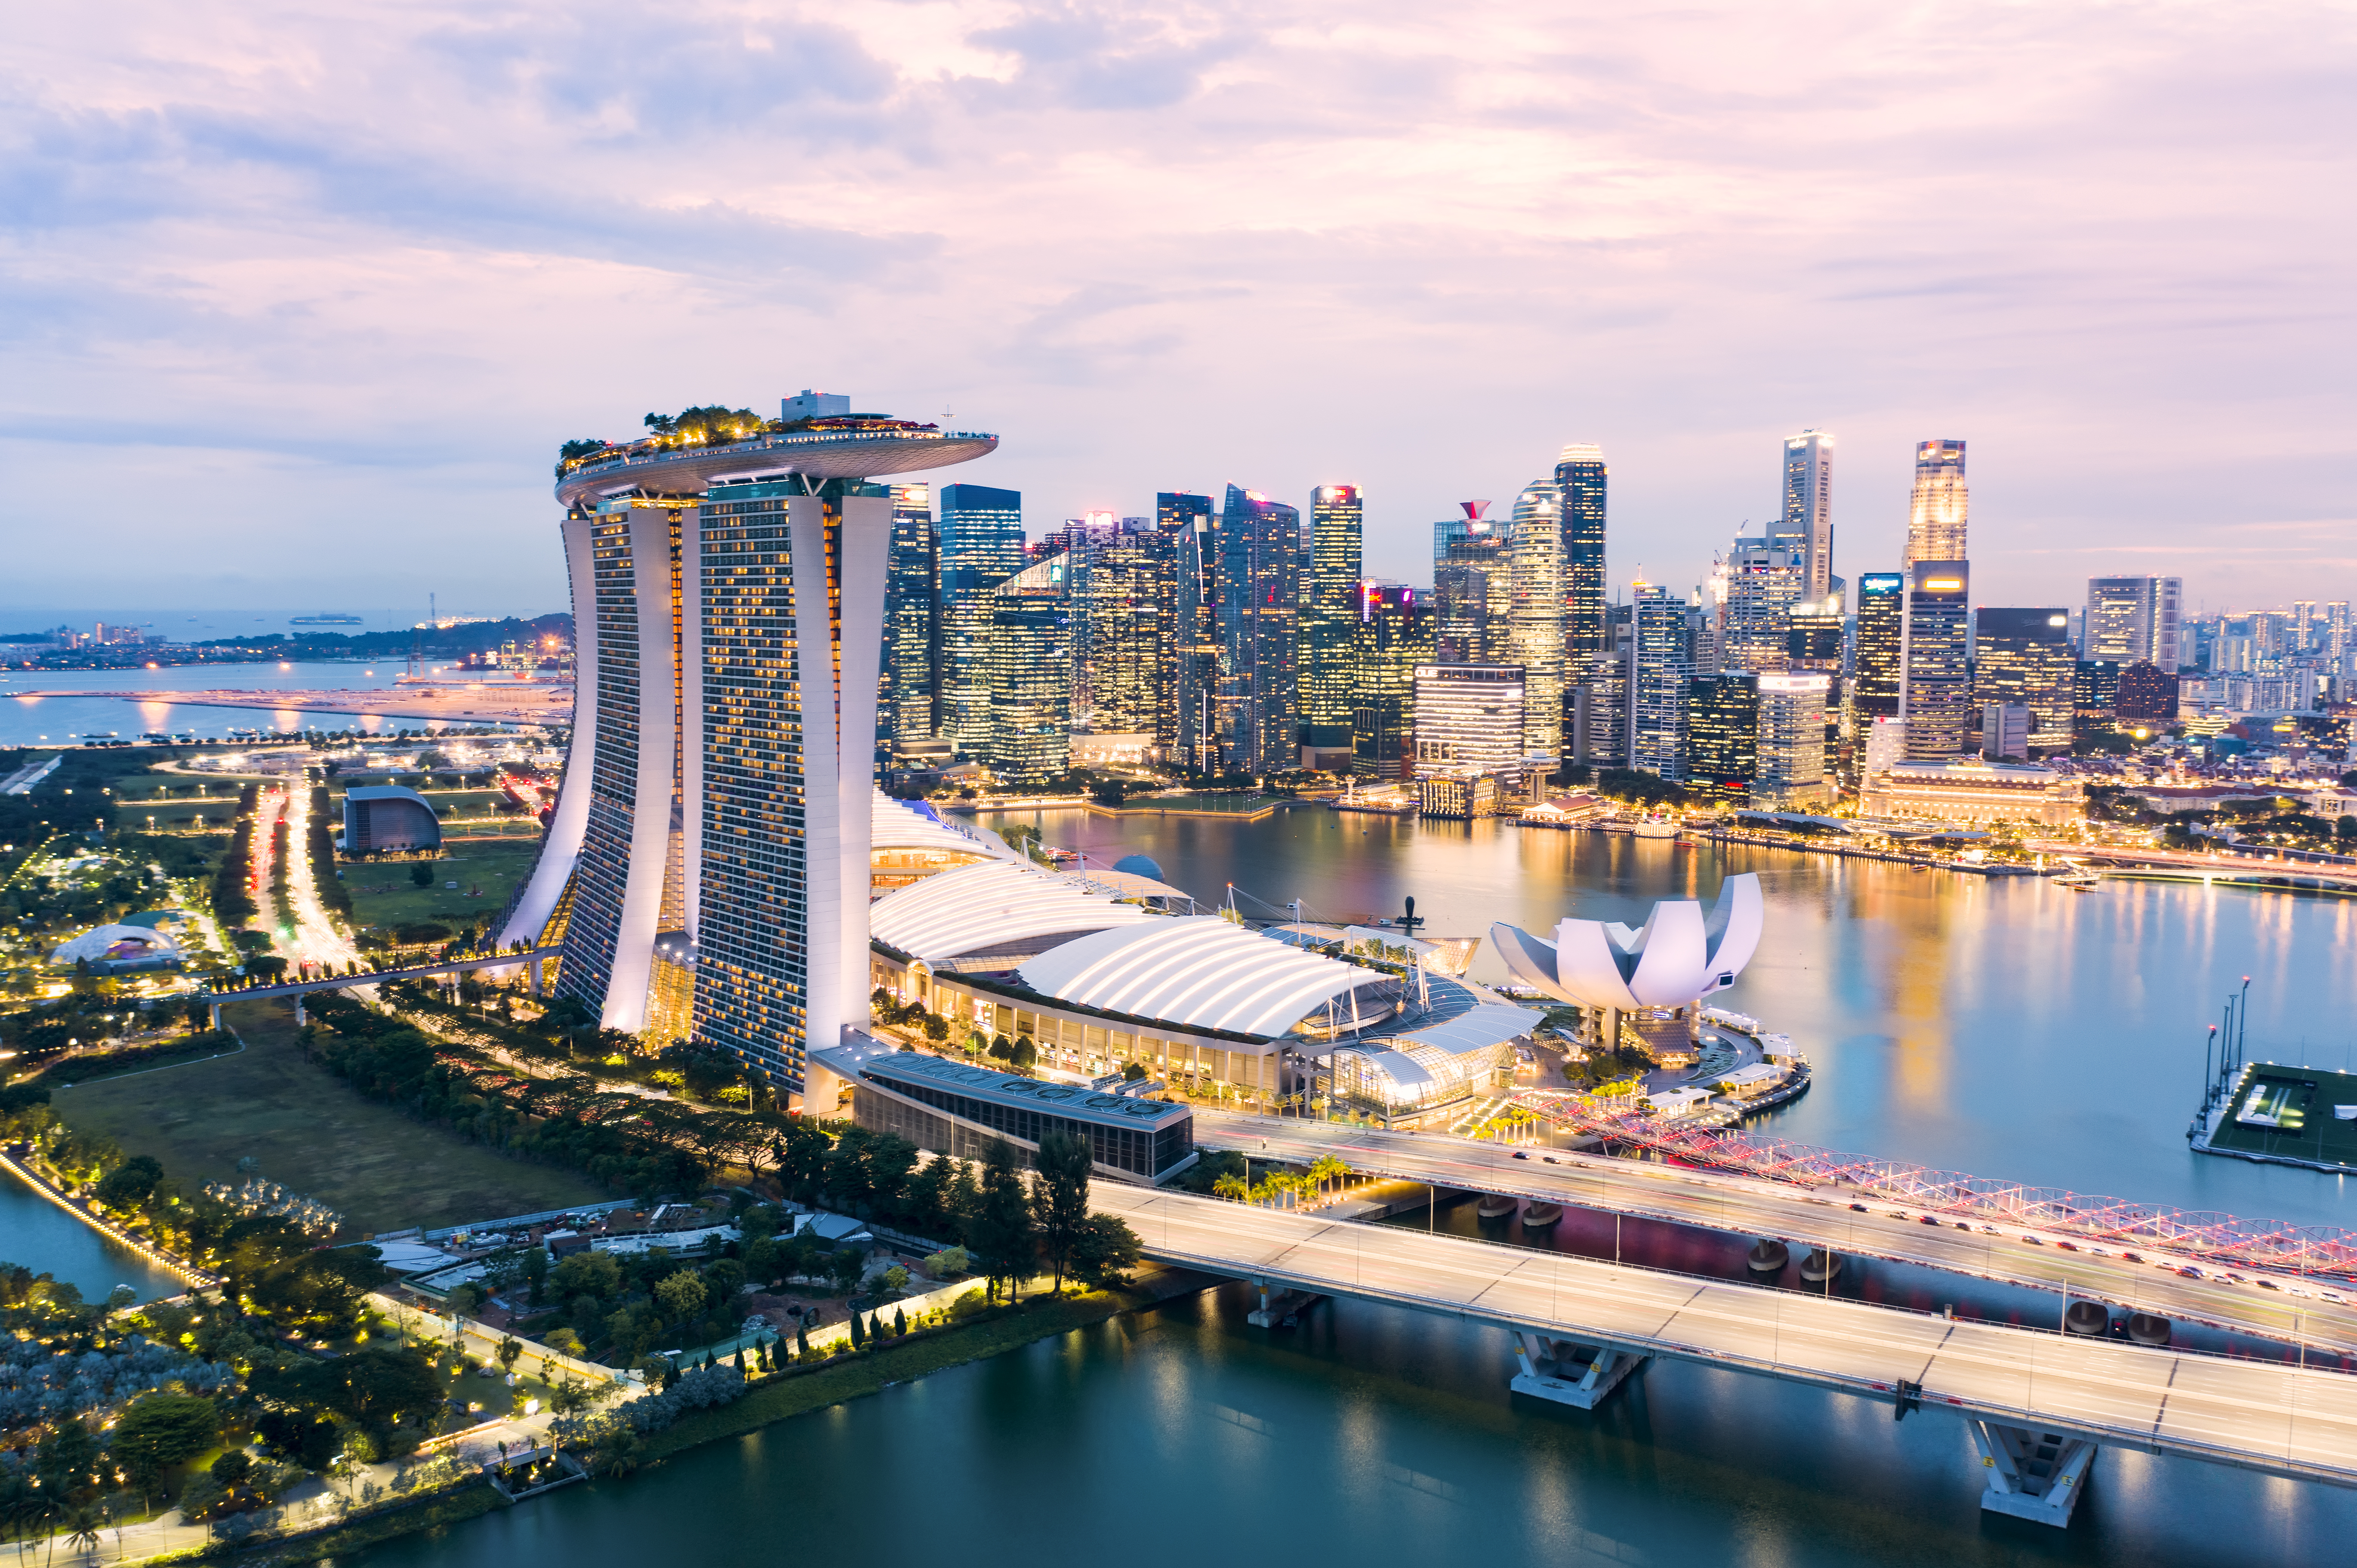 Singapour, une cité-Etat (encore) attractive - L'Express